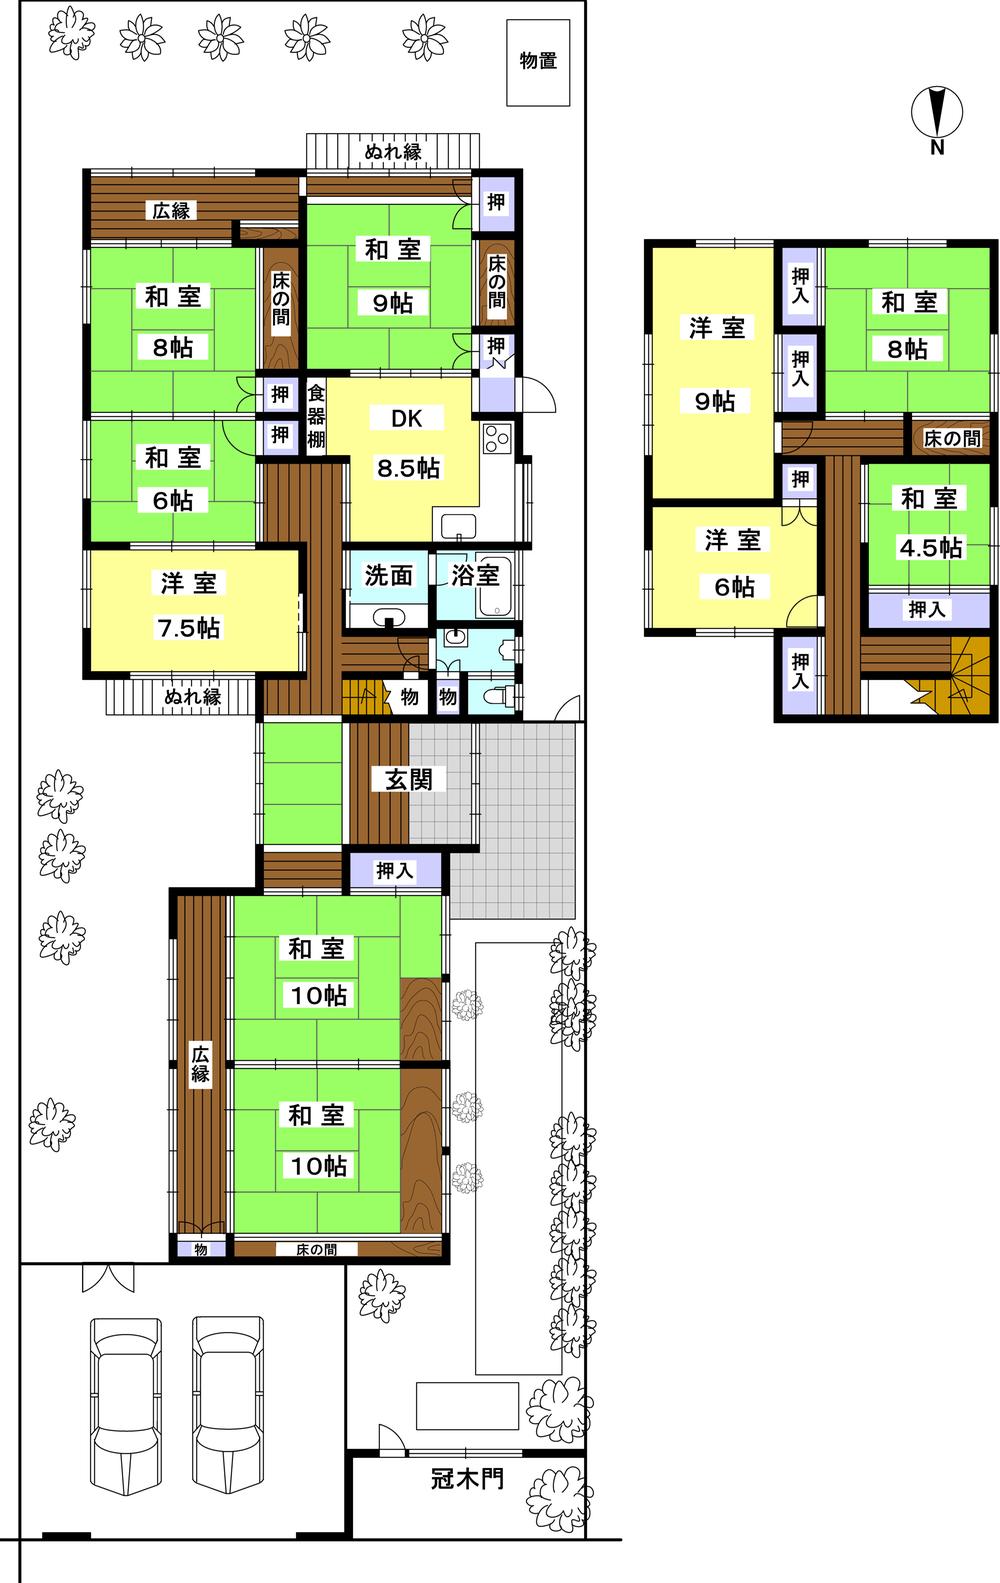 Floor plan. 138 million yen, 10DK, Land area 446.48 sq m , Building area 257.22 sq m